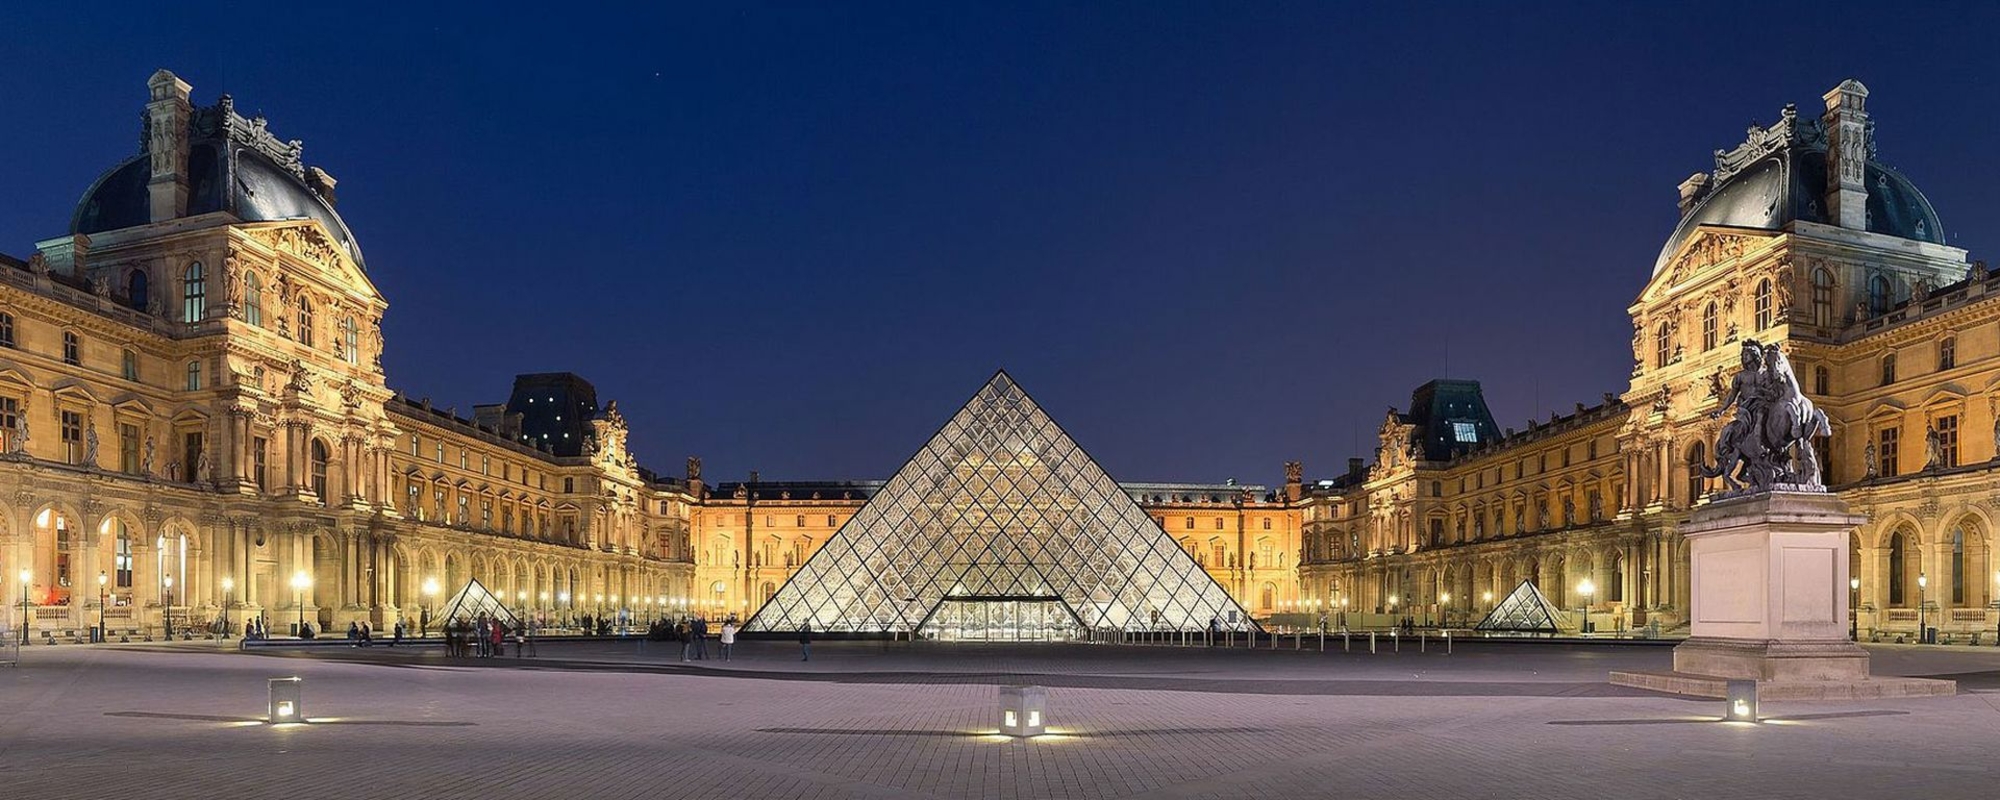 La pyramide du Louvre, de nuit